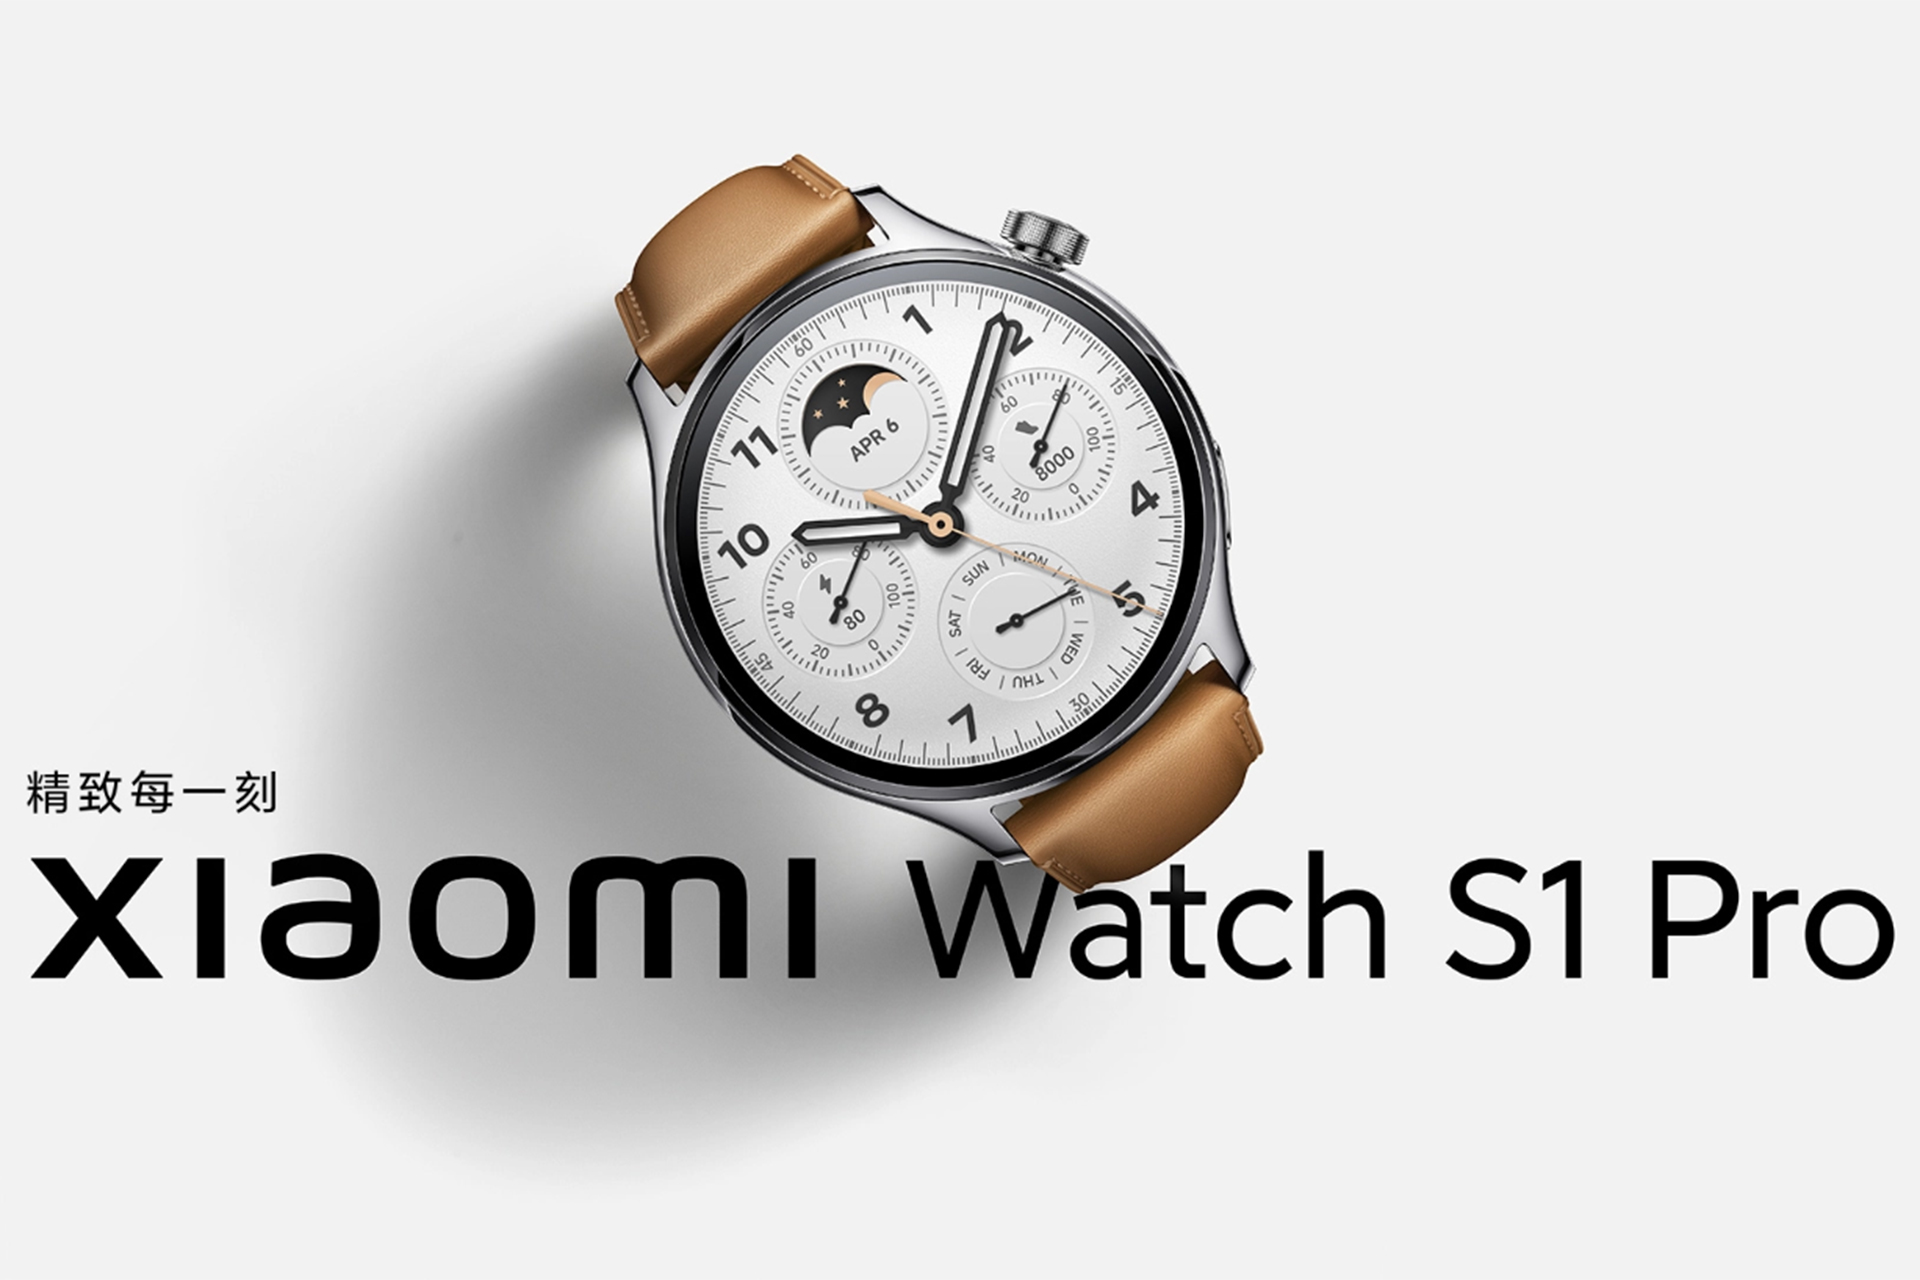 شیائومی Watch S1 Pro با ۱۰۰ حالت ورزشی مختلف و GPS داخلی رونمایی شد